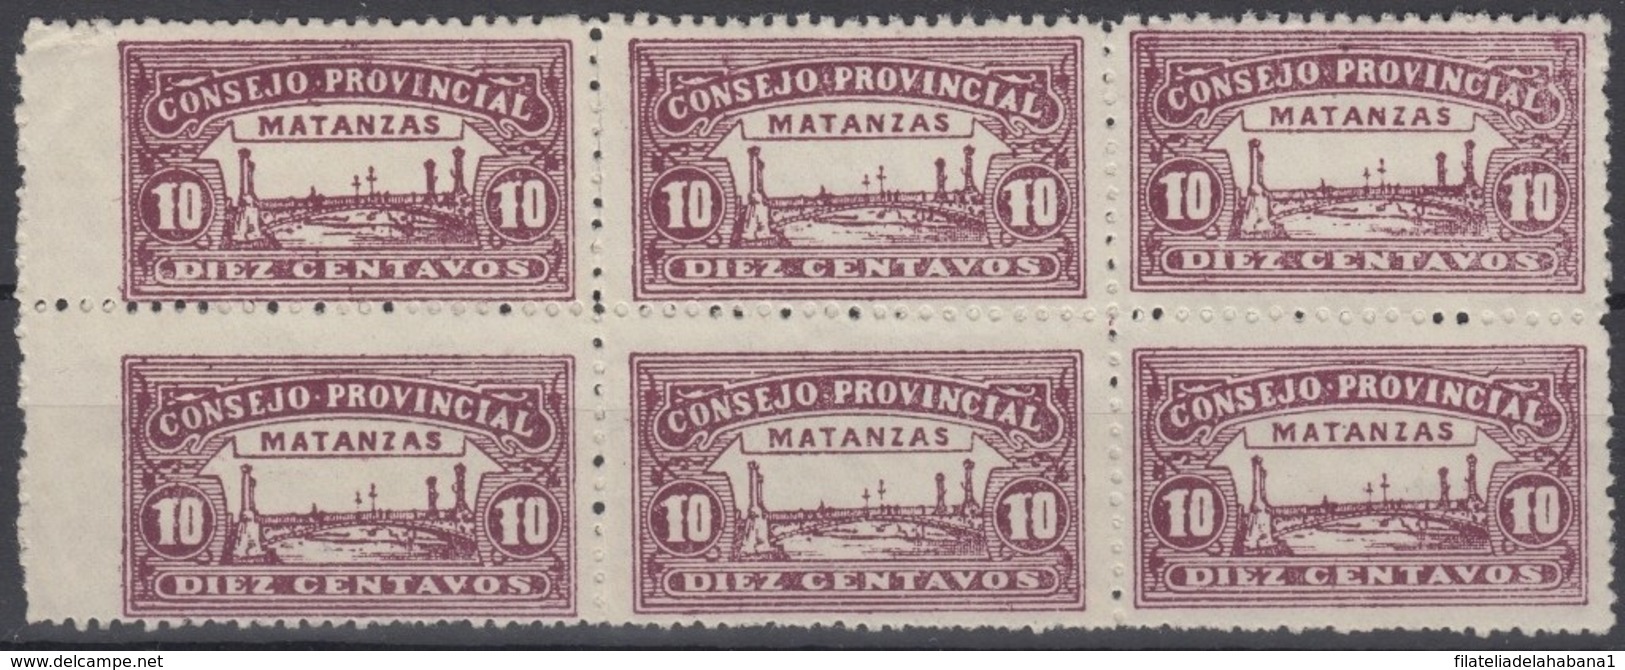 LOC-89 CUBA REPUBLICA. 1903. LOCAL REVENUE MATANZAS. 10c PERFORATED BLOCK 6. NO GUM. - Postage Due